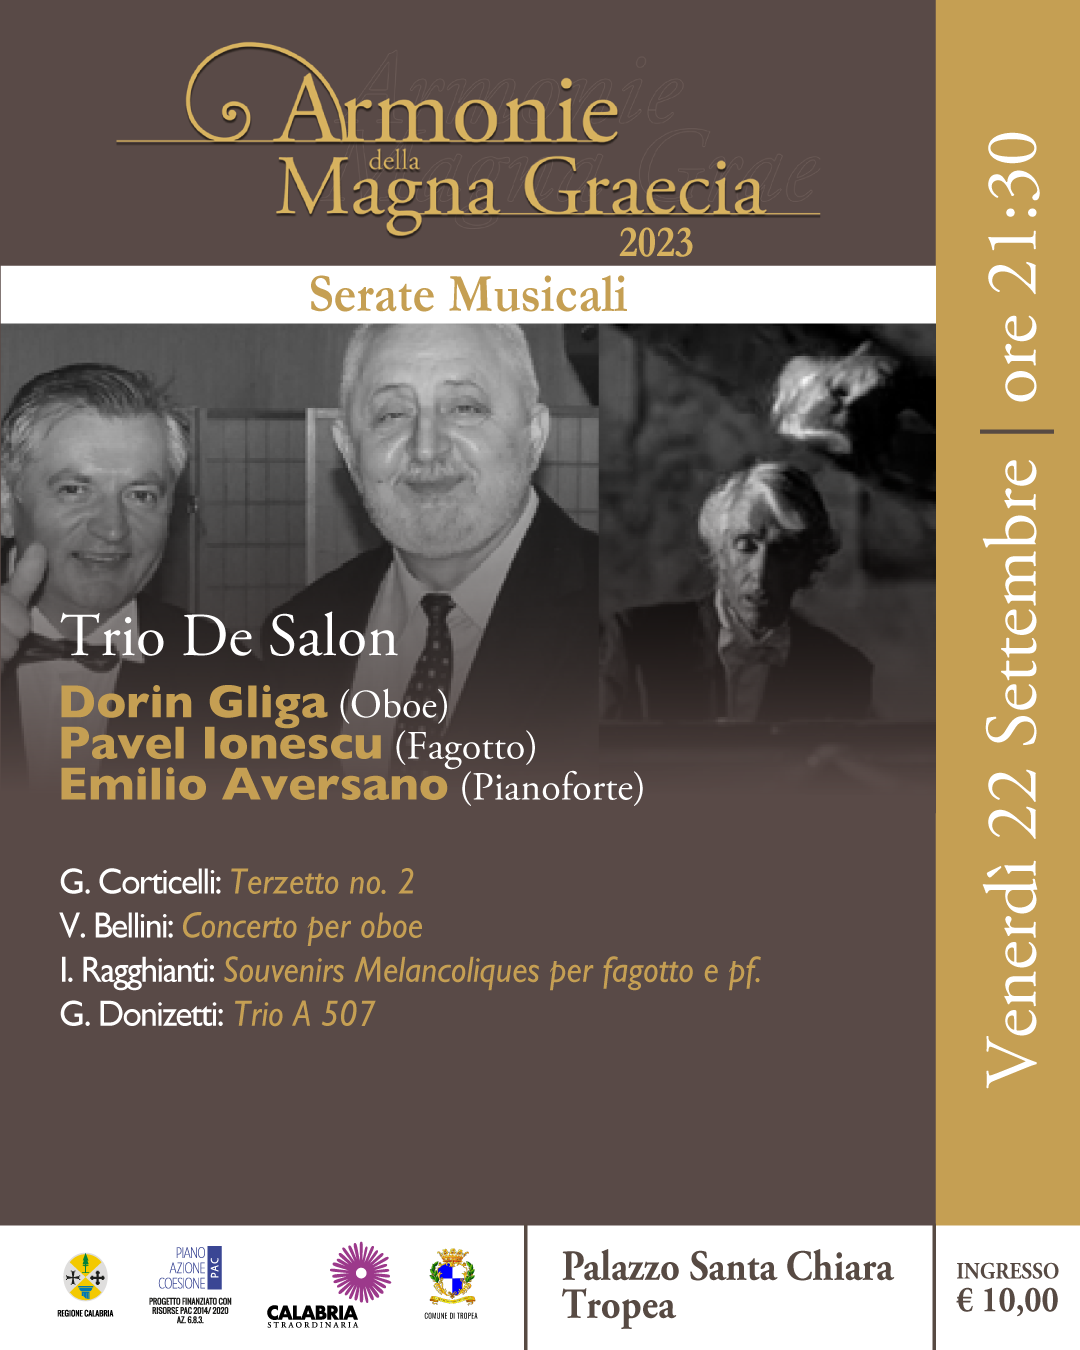 Trio De Salon (Romania)Dorin Gliga (oboe)Pavel Ionescu (fagotto)Emilio Aversano (pianoforte)